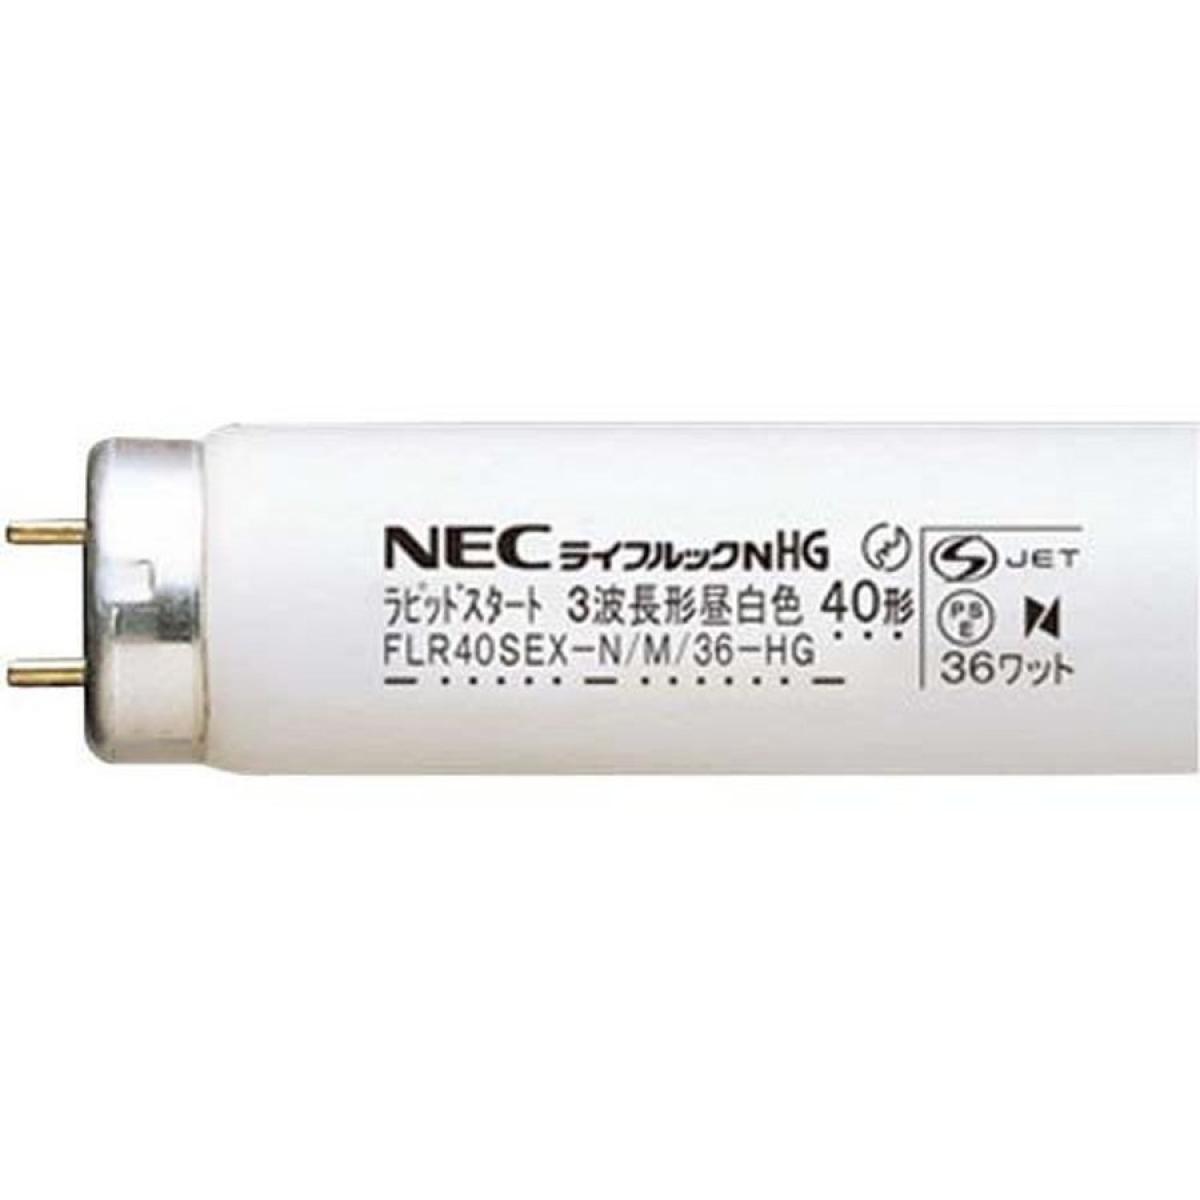 NEC ラピッドスタート形直管 3波長蛍光ランプ 昼白色 40形 FLR40SEX-N/M-HG-10P